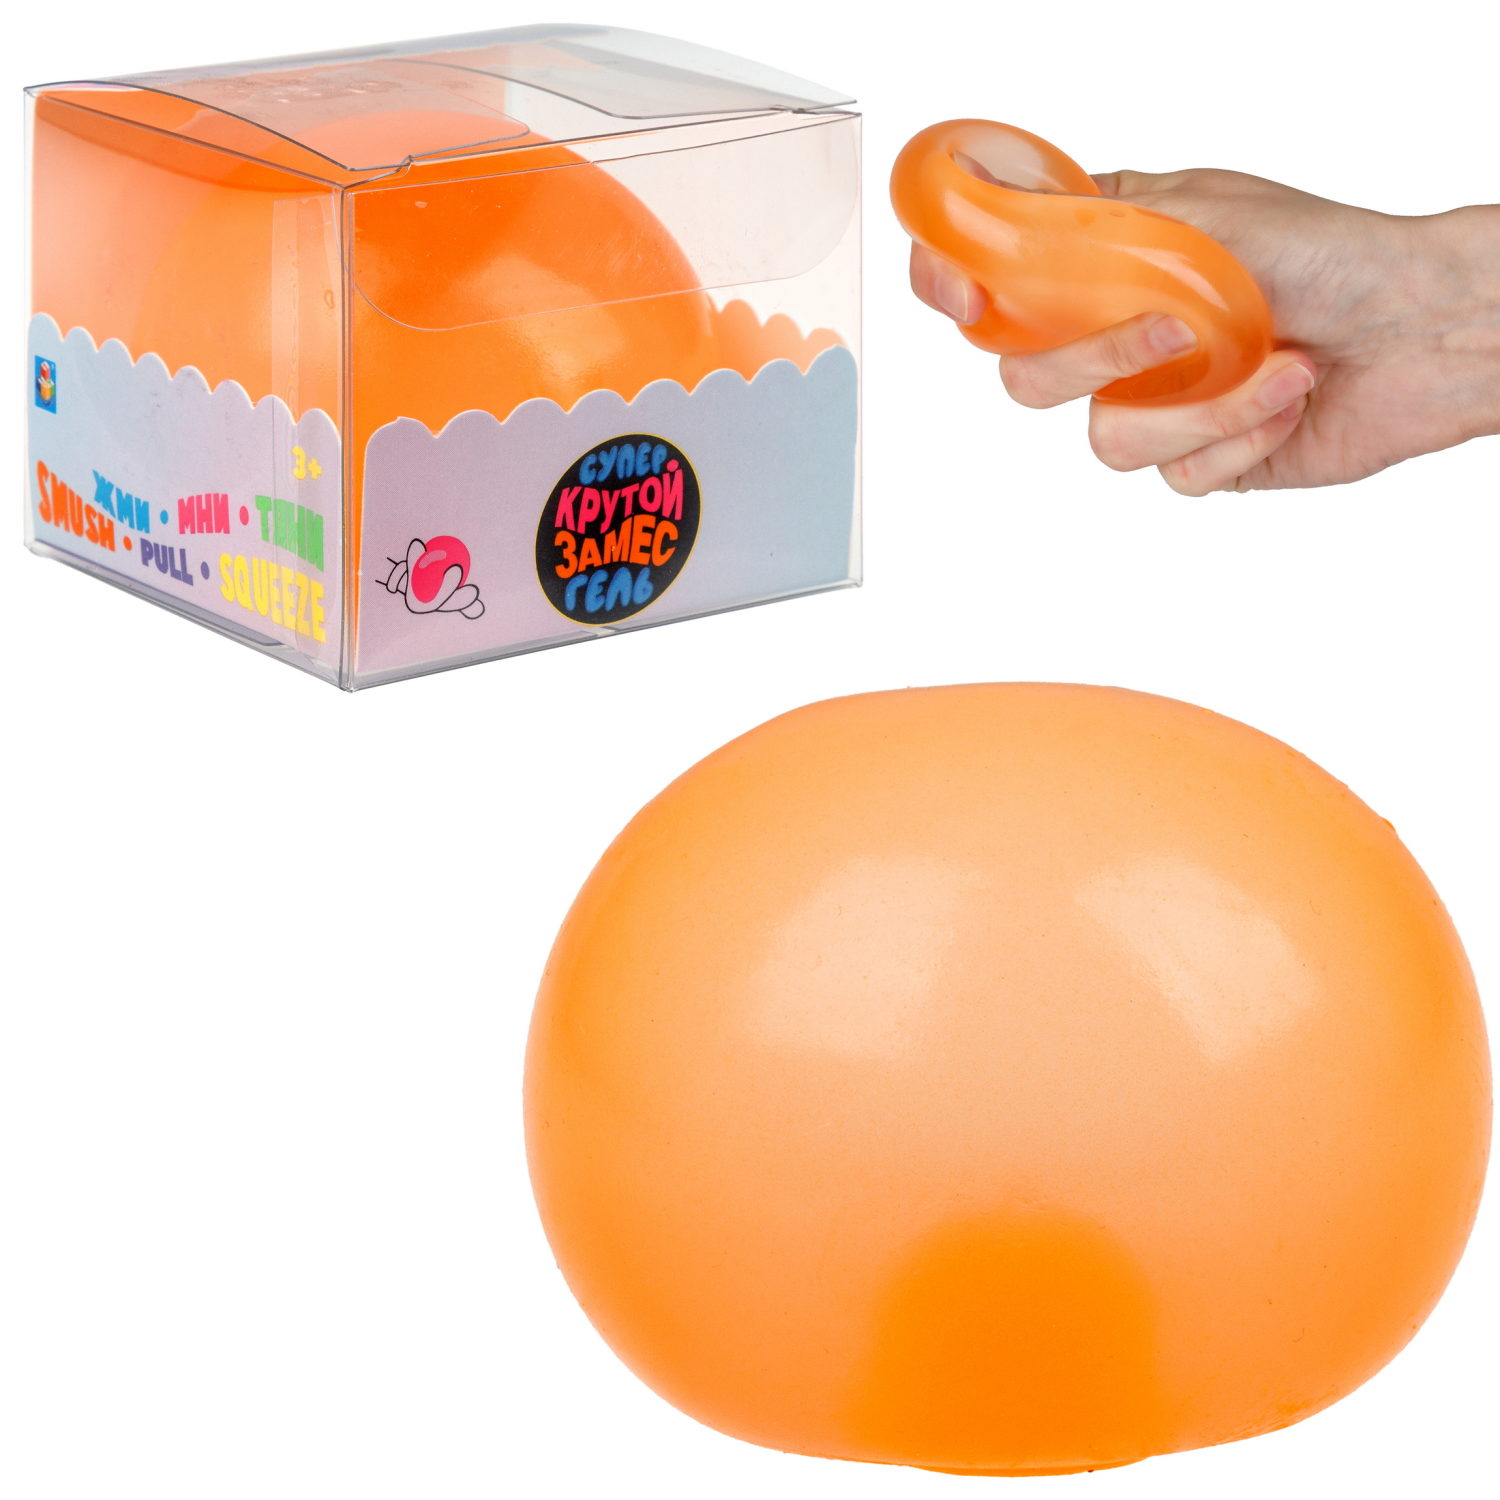 Игрушка-антистресс 1toy Крутой замес Супергель оранжевый шар матовый 6см